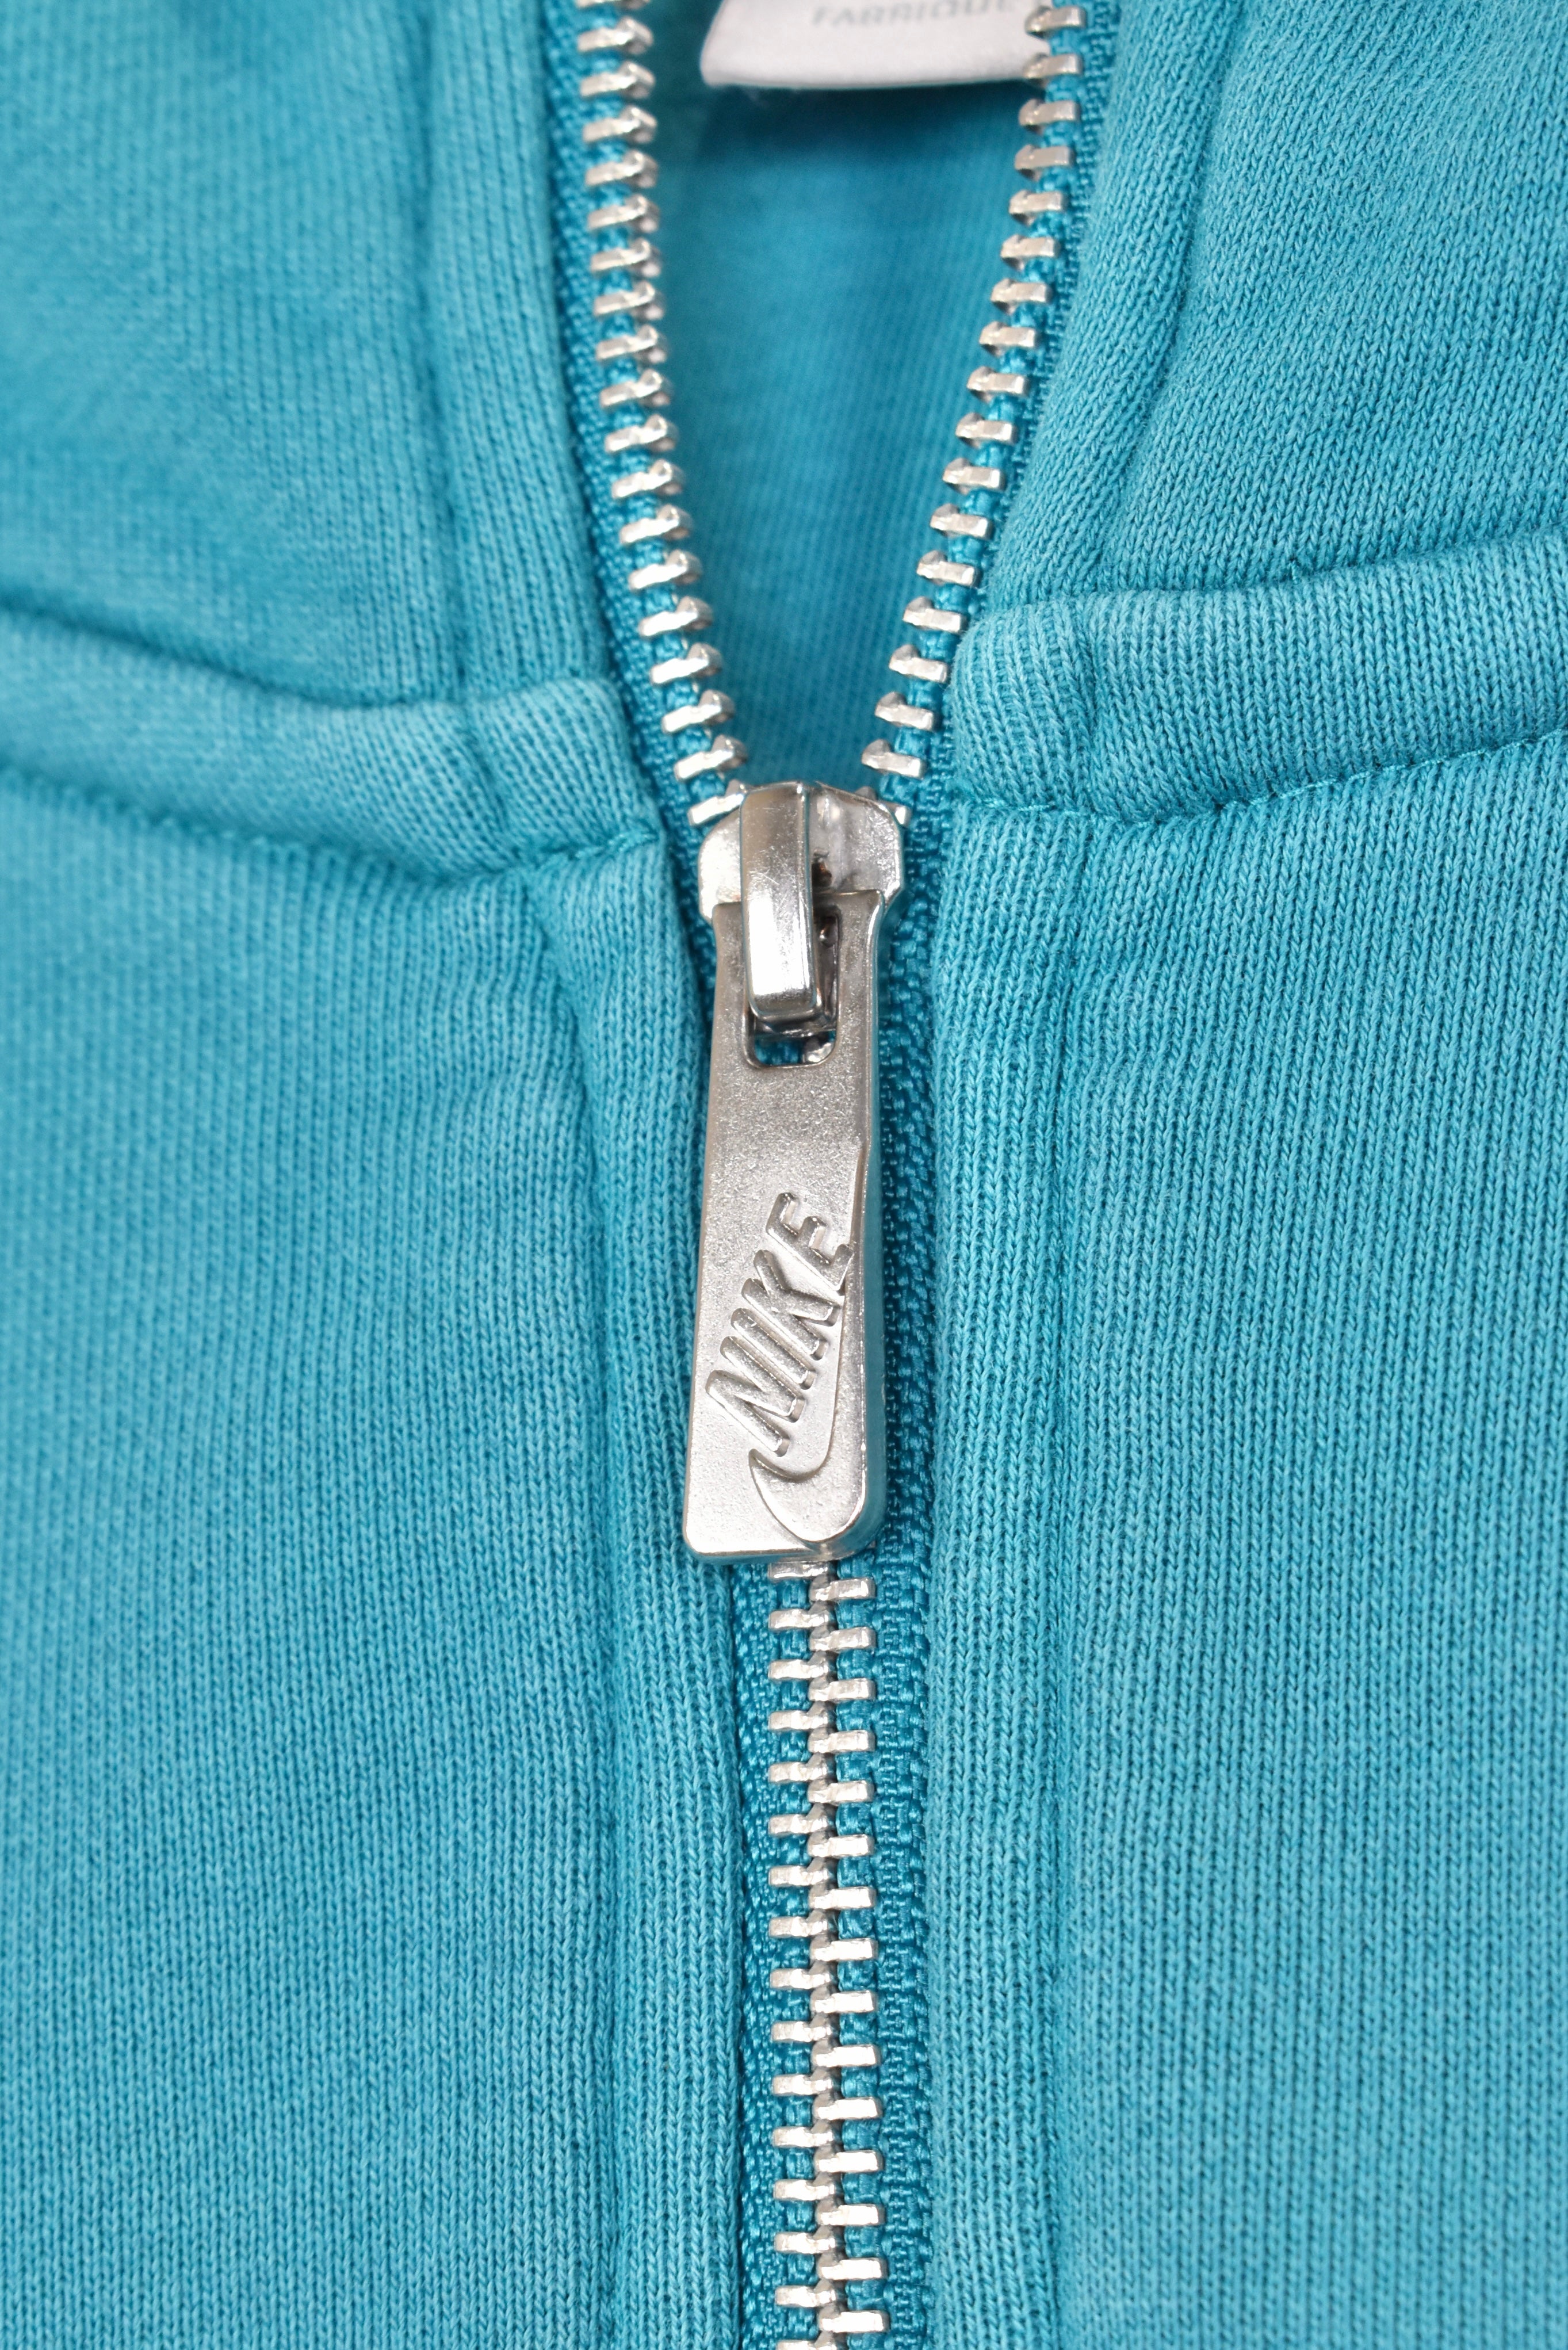 Vintage Nike hoodie, blue embroidered sweatshirt - AU Medium NIKE